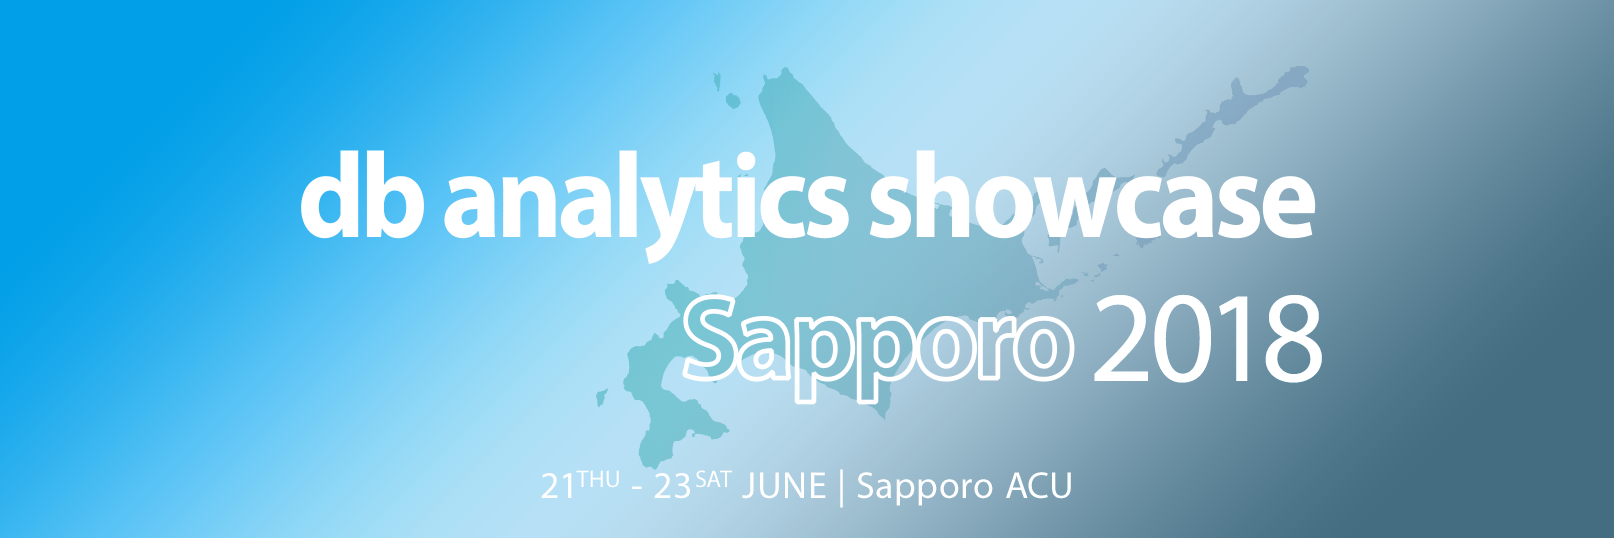 db analytics showcase Sapporo 2018